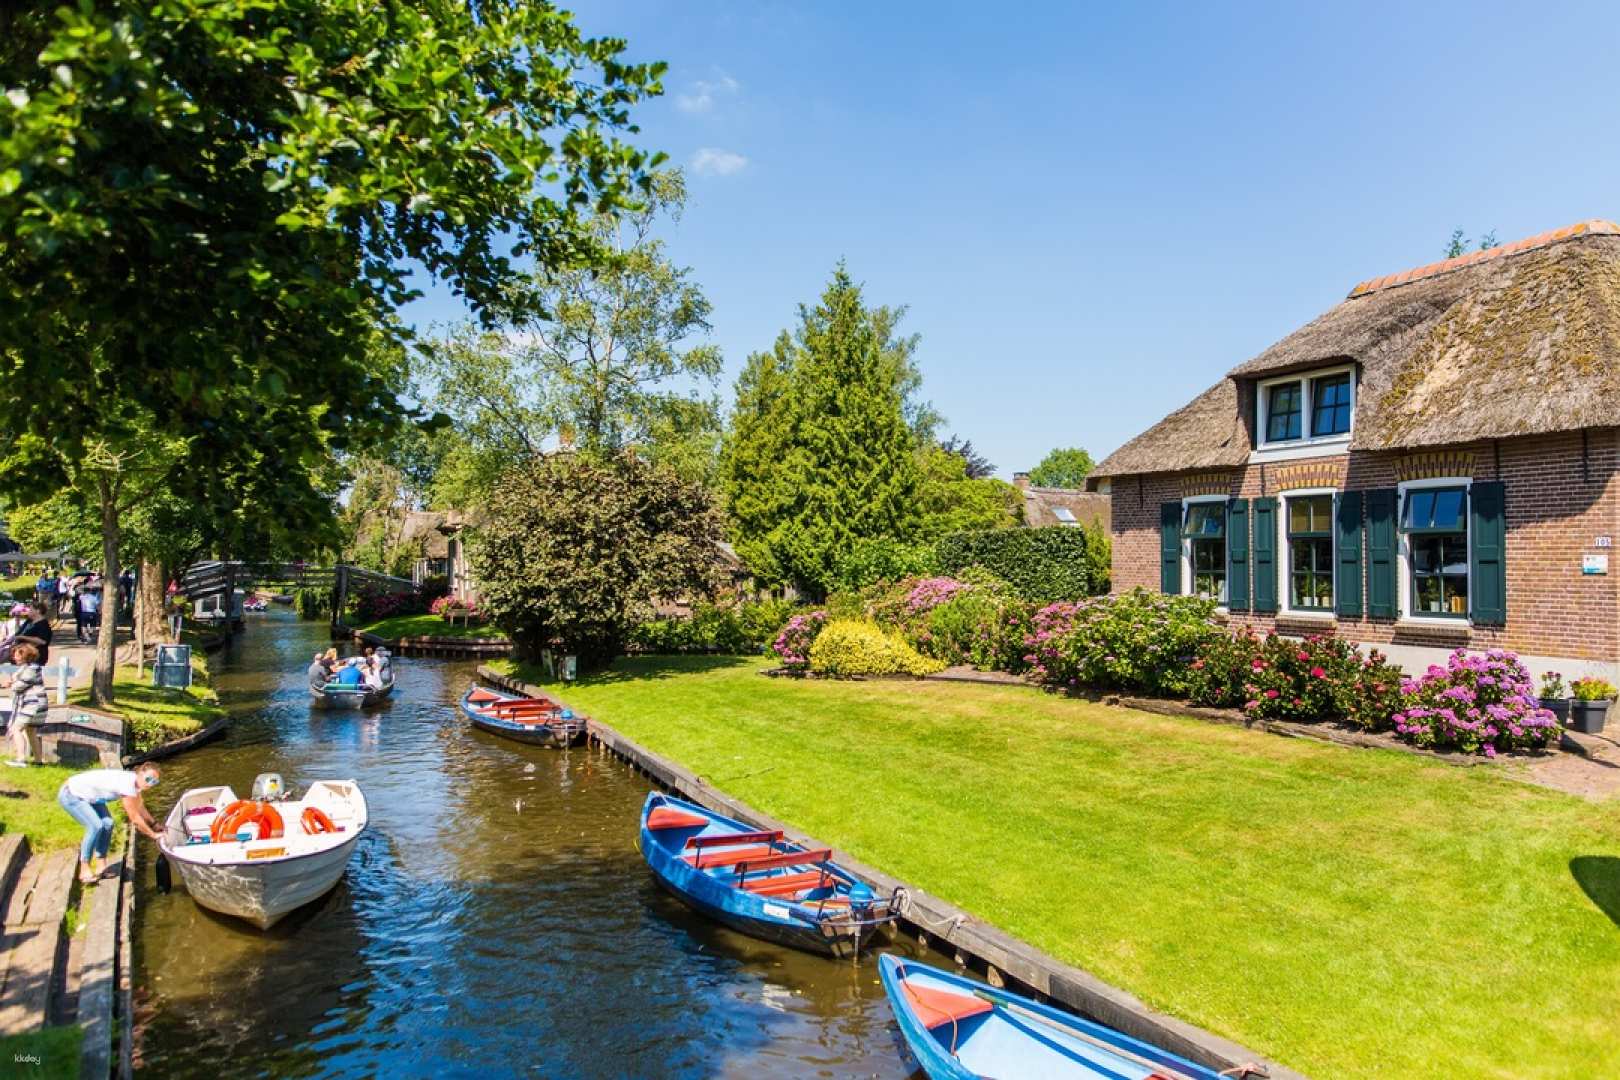 荷蘭-近郊一日遊| 羊角村&運河遊船體驗| 阿姆斯特丹出發